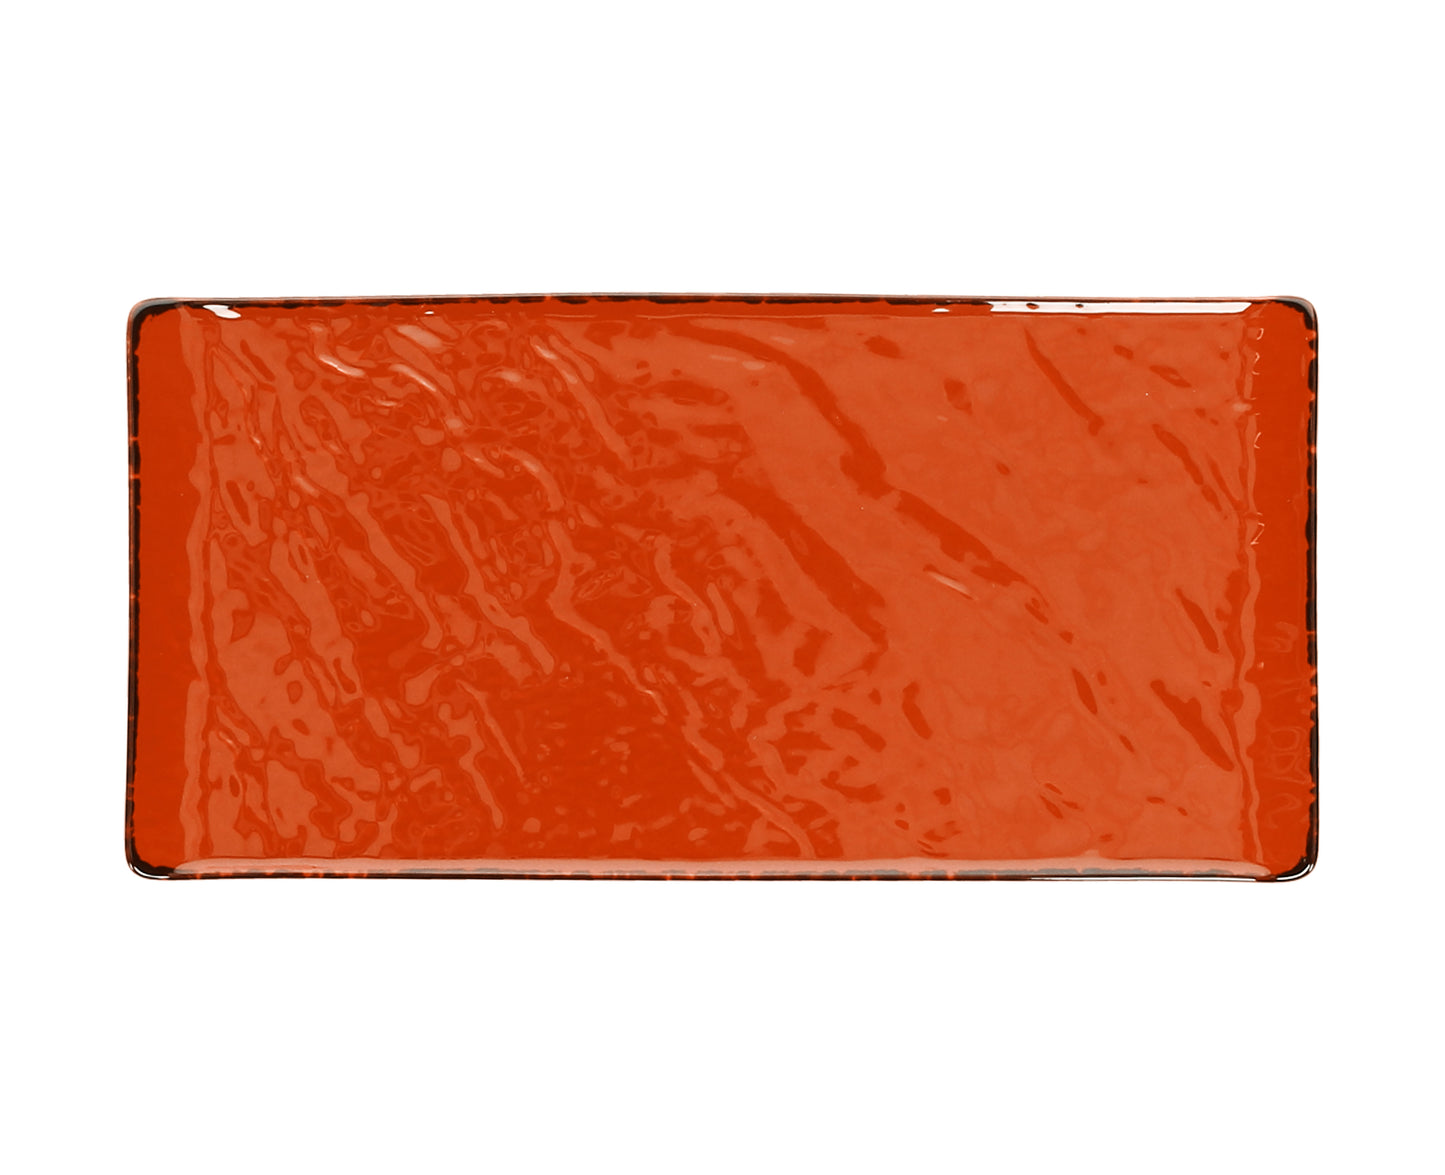 Servierteller / Servierplatte VULCANIA aus Porzellan, 30 x 15 cm, orange - Porzellan aus Italien